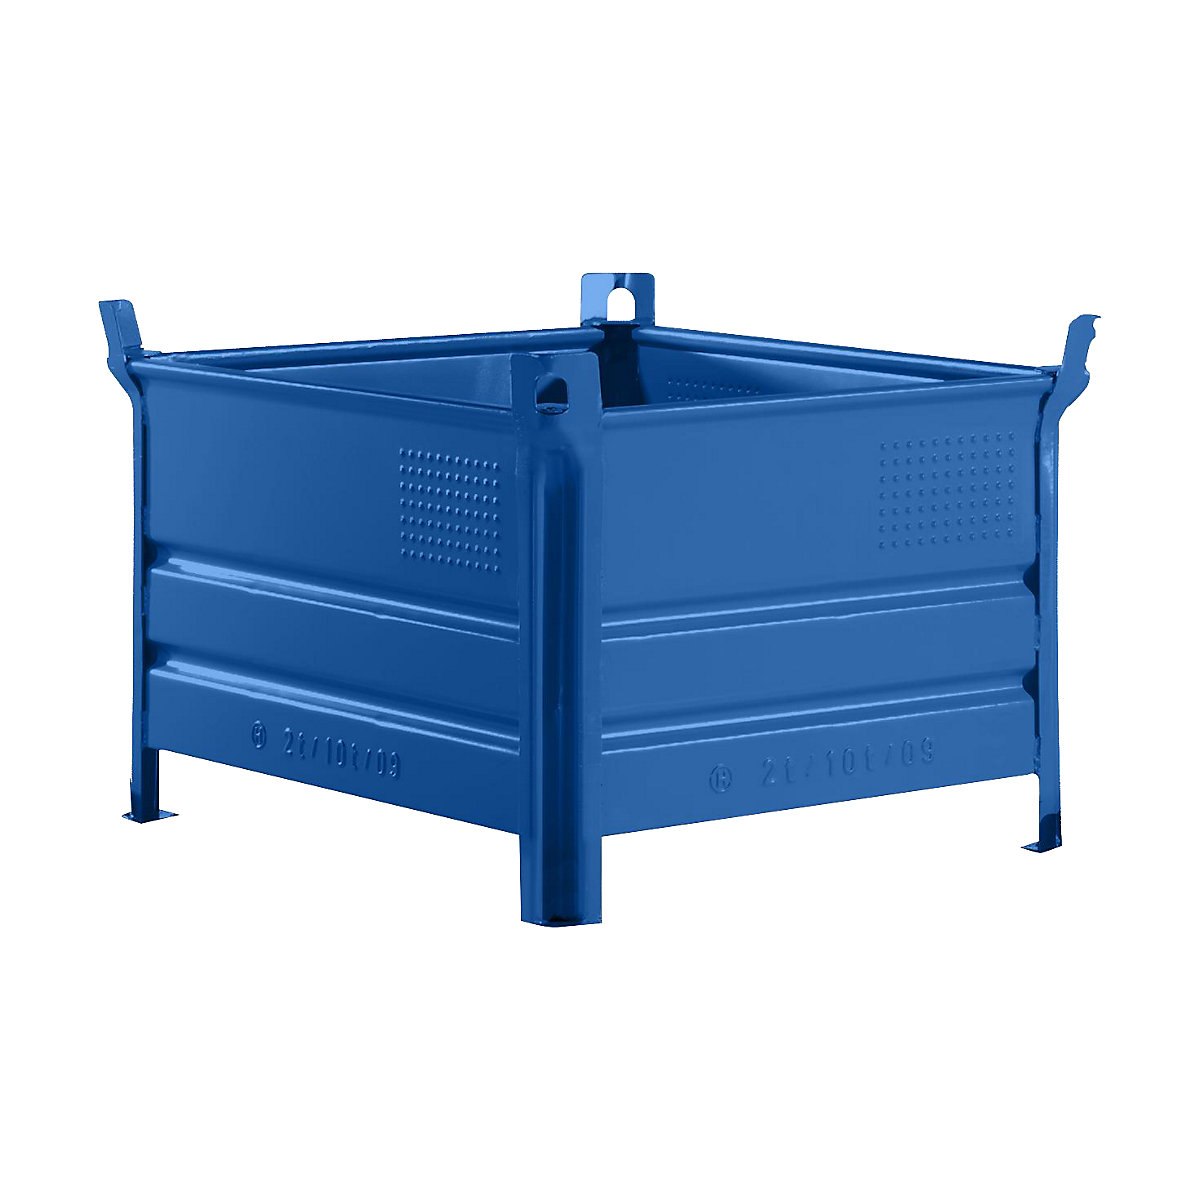 Teli falú rakásolható tároló – Heson, szé x h 800 x 1000 mm, teherbírás 1000 kg, kék, 10 db-tól-9